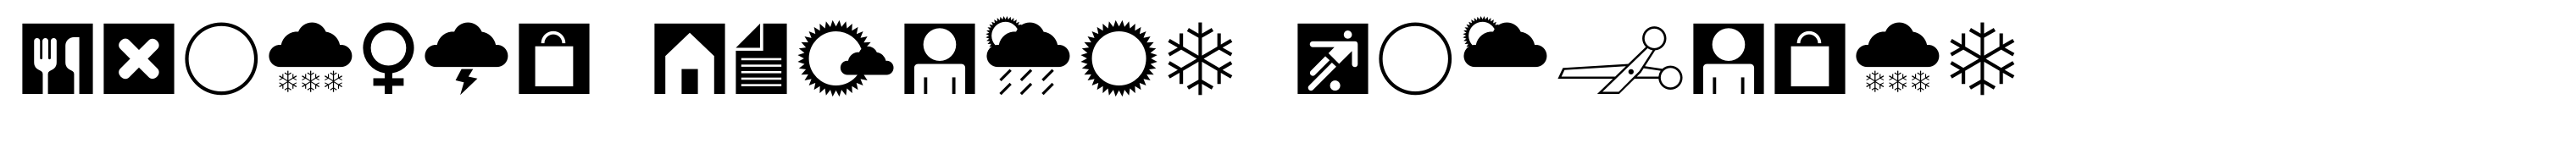 Leitura Symbols Dingbats